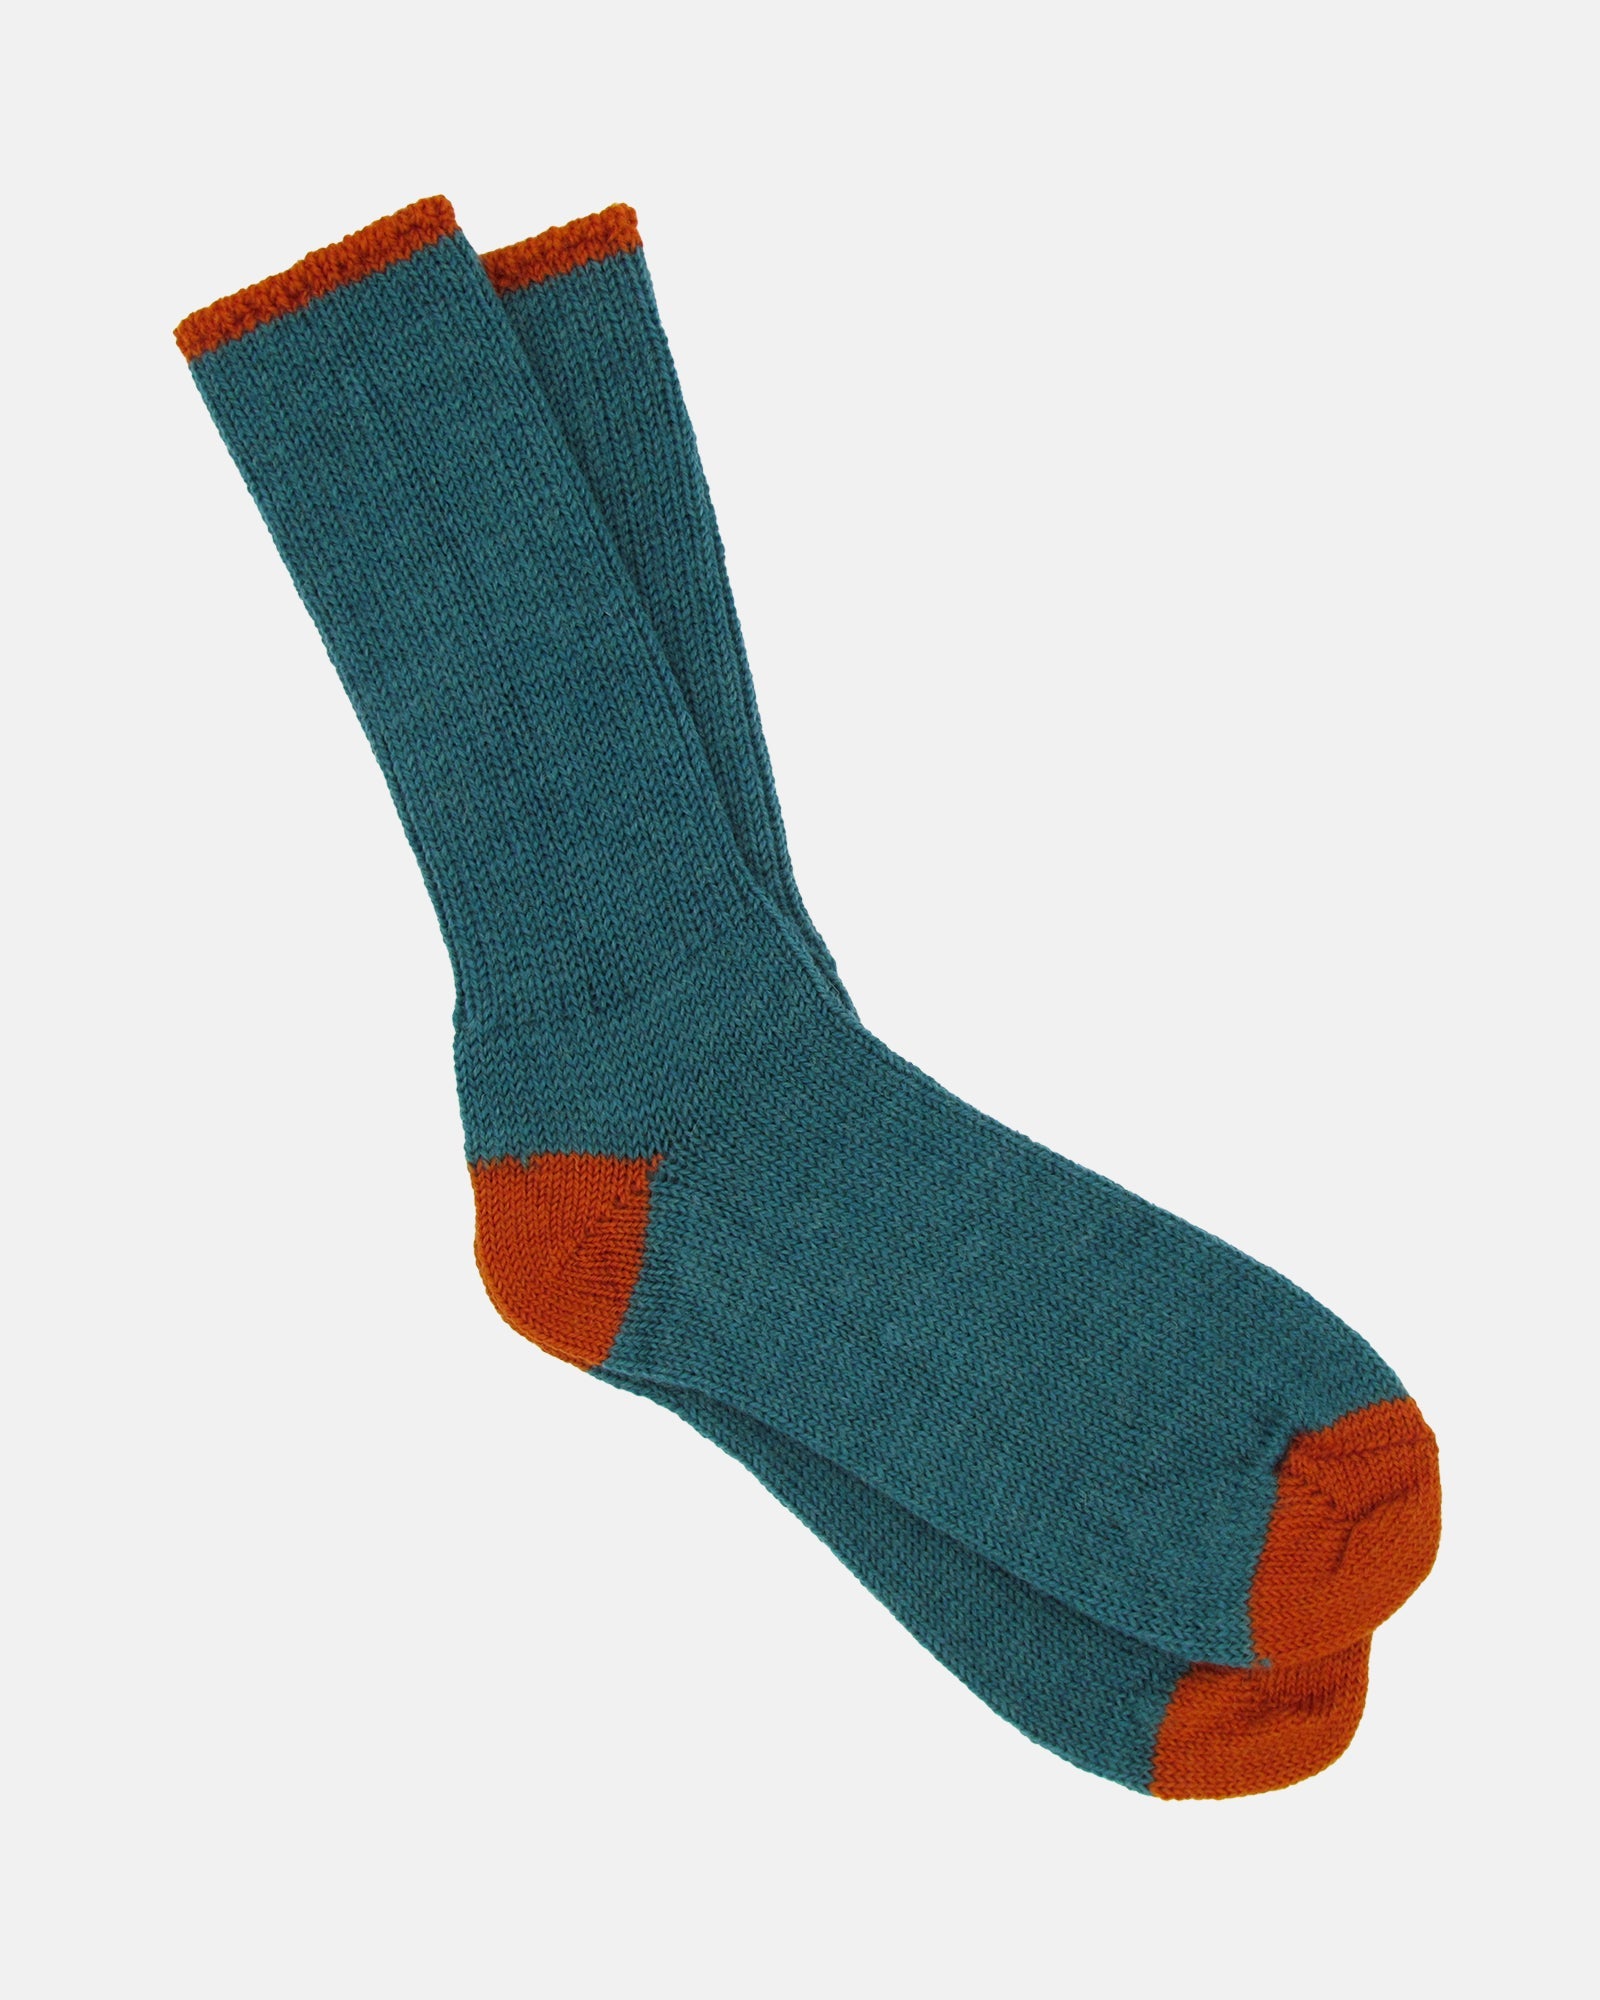 Soft Wool Socks - Aqua/Orange - BRIT LOCKER